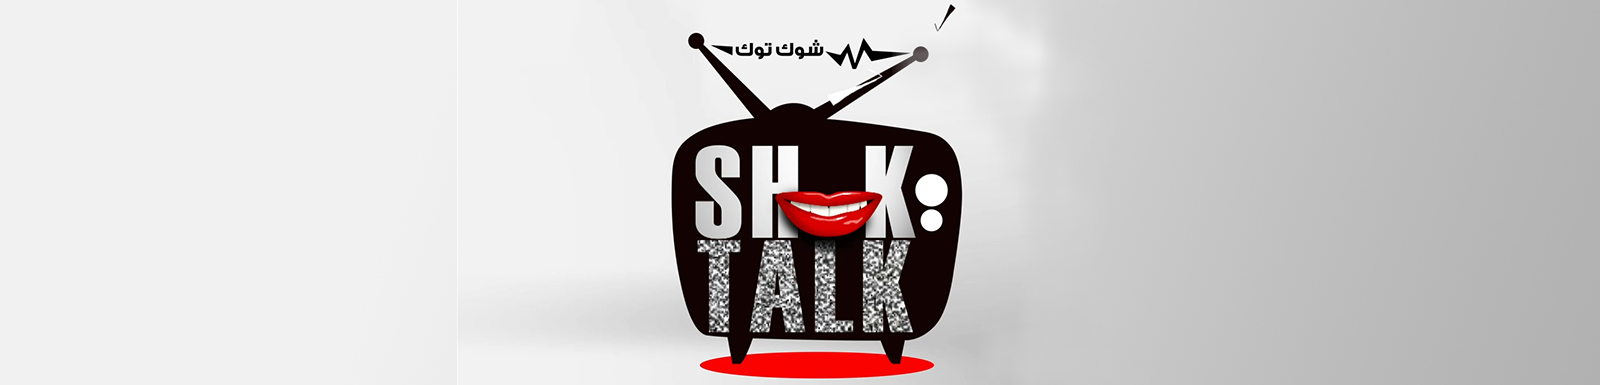 تحميل برنامج شوك توك الحلقة 13 كاملة MBC shahid شاهد نت